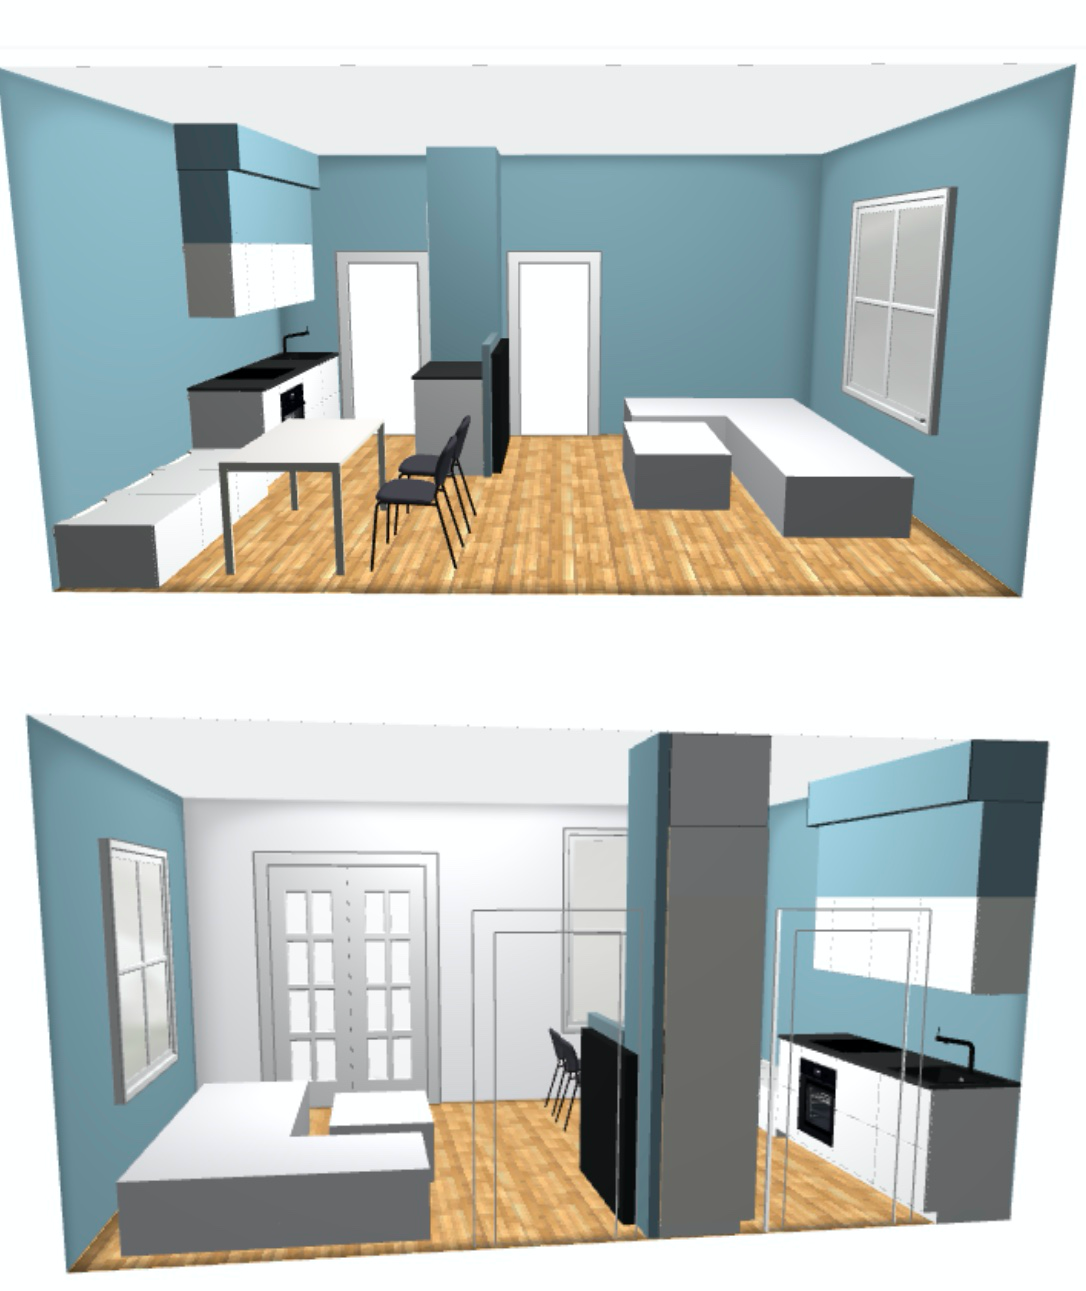 Utvidelse av kjøkken i liten leilighet -  - isabella